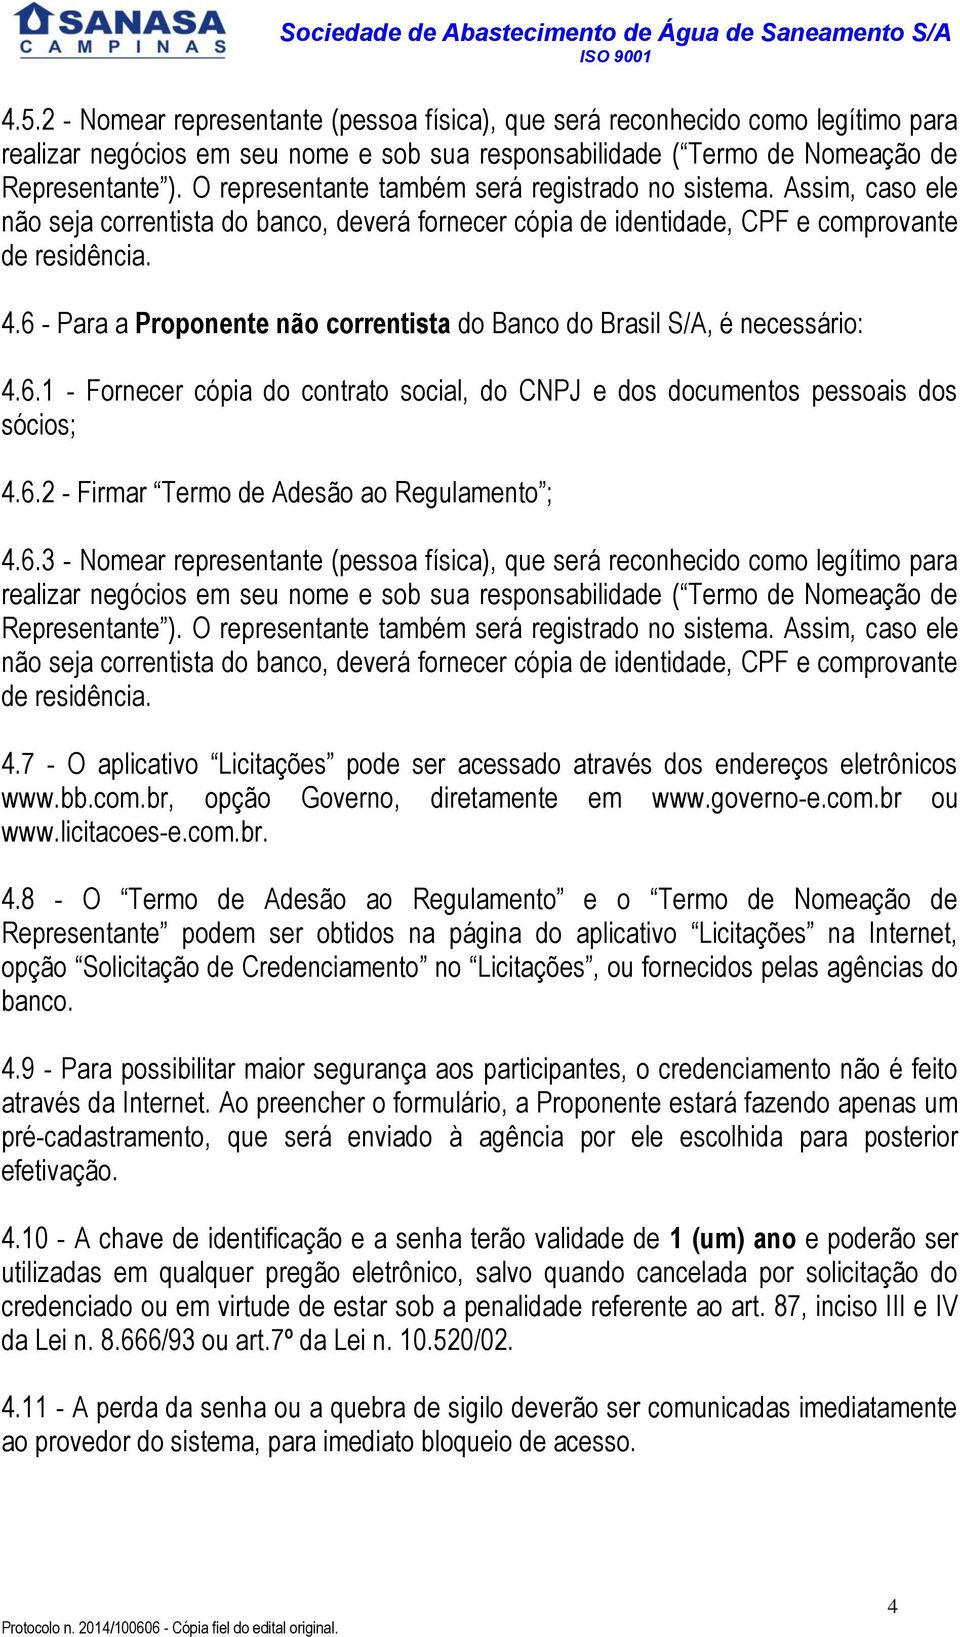 6 - Para a Proponente não correntista do Banco do Brasil S/A, é necessário: 4.6.1 - Fornecer cópia do contrato social, do CNPJ e dos documentos pessoais dos sócios; 4.6.2 - Firmar Termo de Adesão ao Regulamento ; 4.